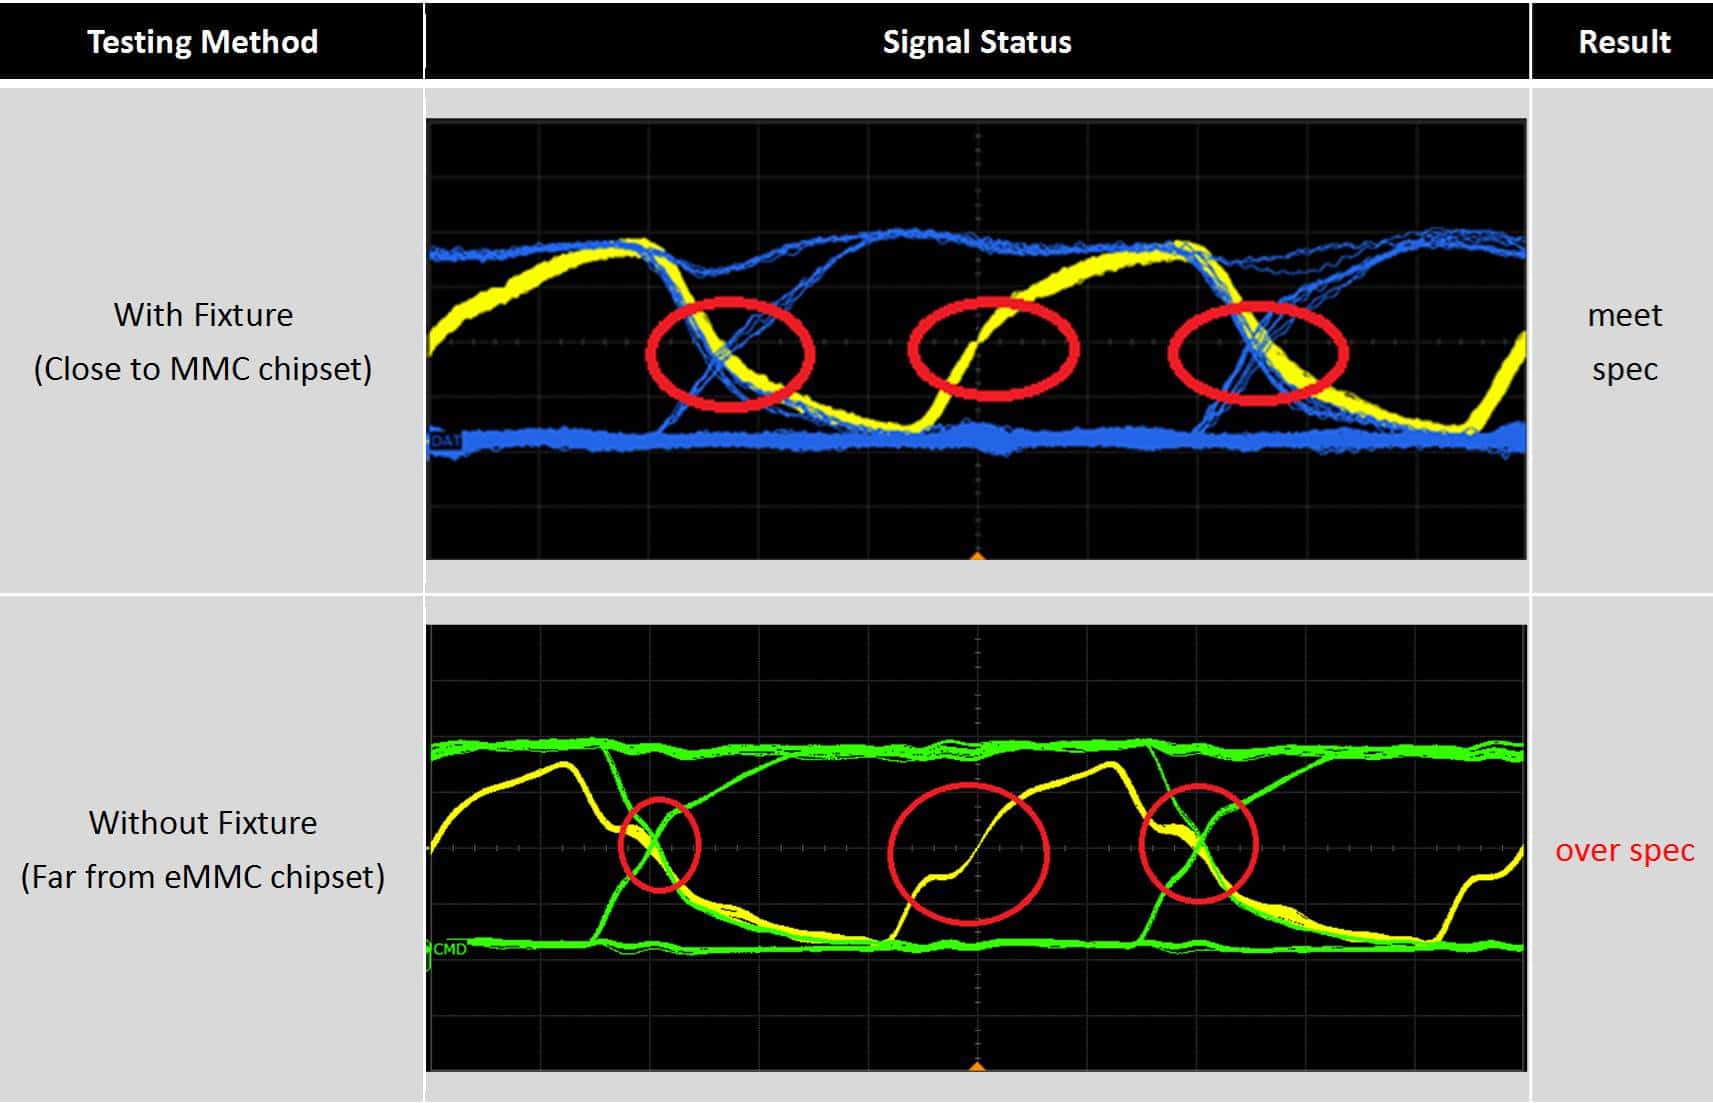 透過下圖的反射訊號(中間紅圈處)可觀察到：使用專用治具的訊號抖動較小，故訊號較穩定；而無使用治具板的訊號，訊號抖動較大較不穩定。